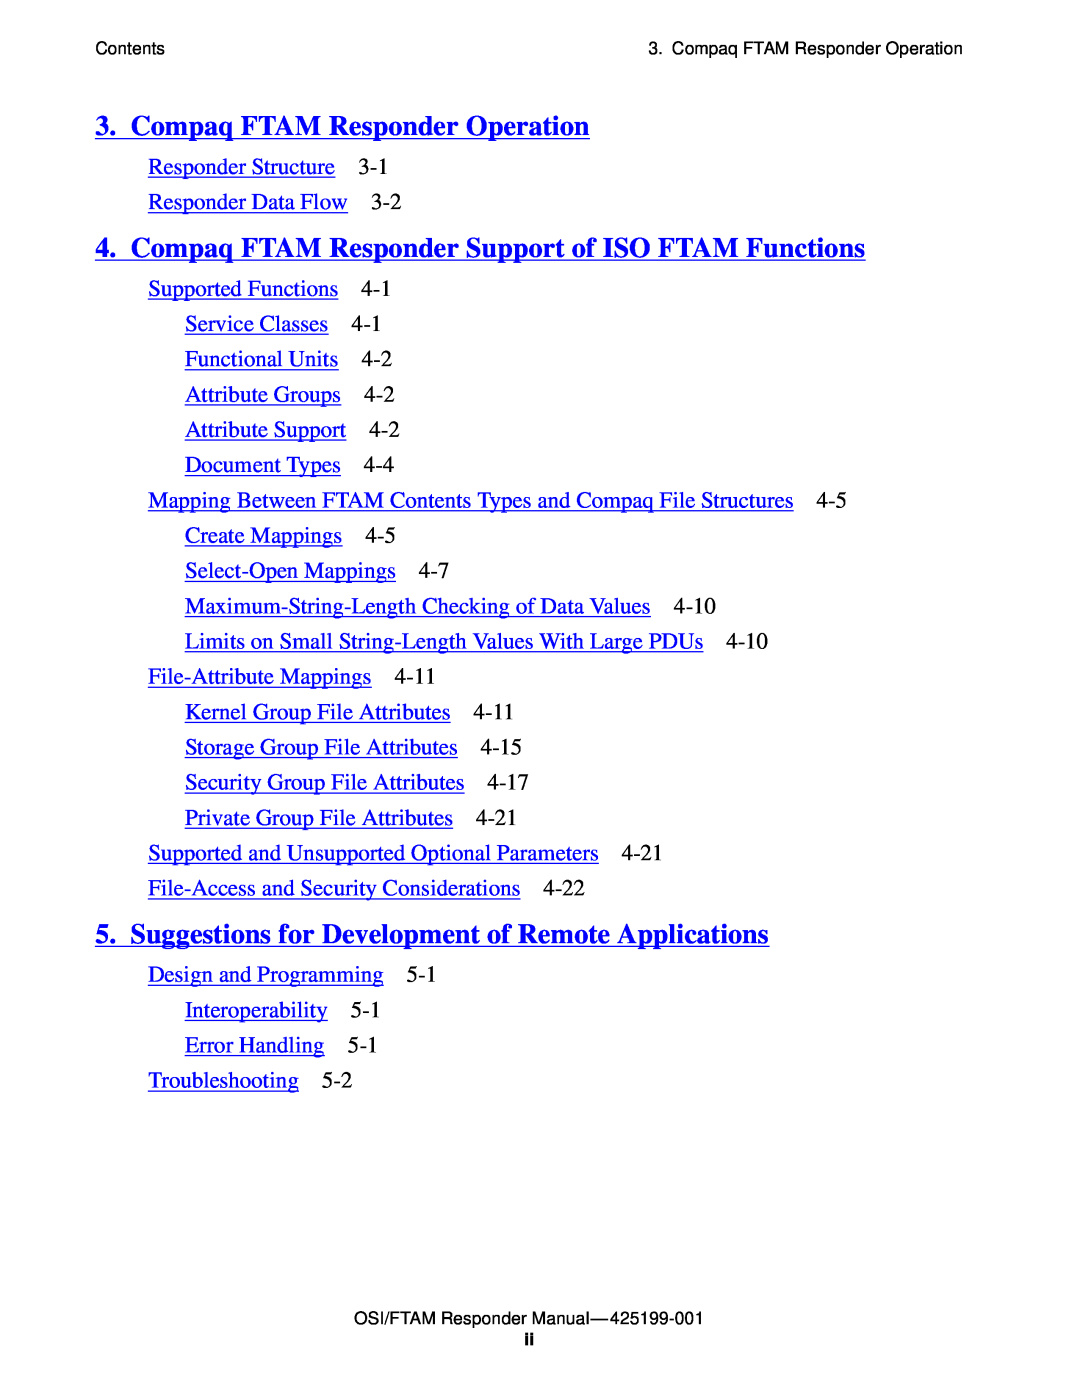 Compaq OSI/APLMGR D43, OSI/FTAM D43 Compaq FTAM Responder Operation, Compaq FTAM Responder Support of ISO FTAM Functions 